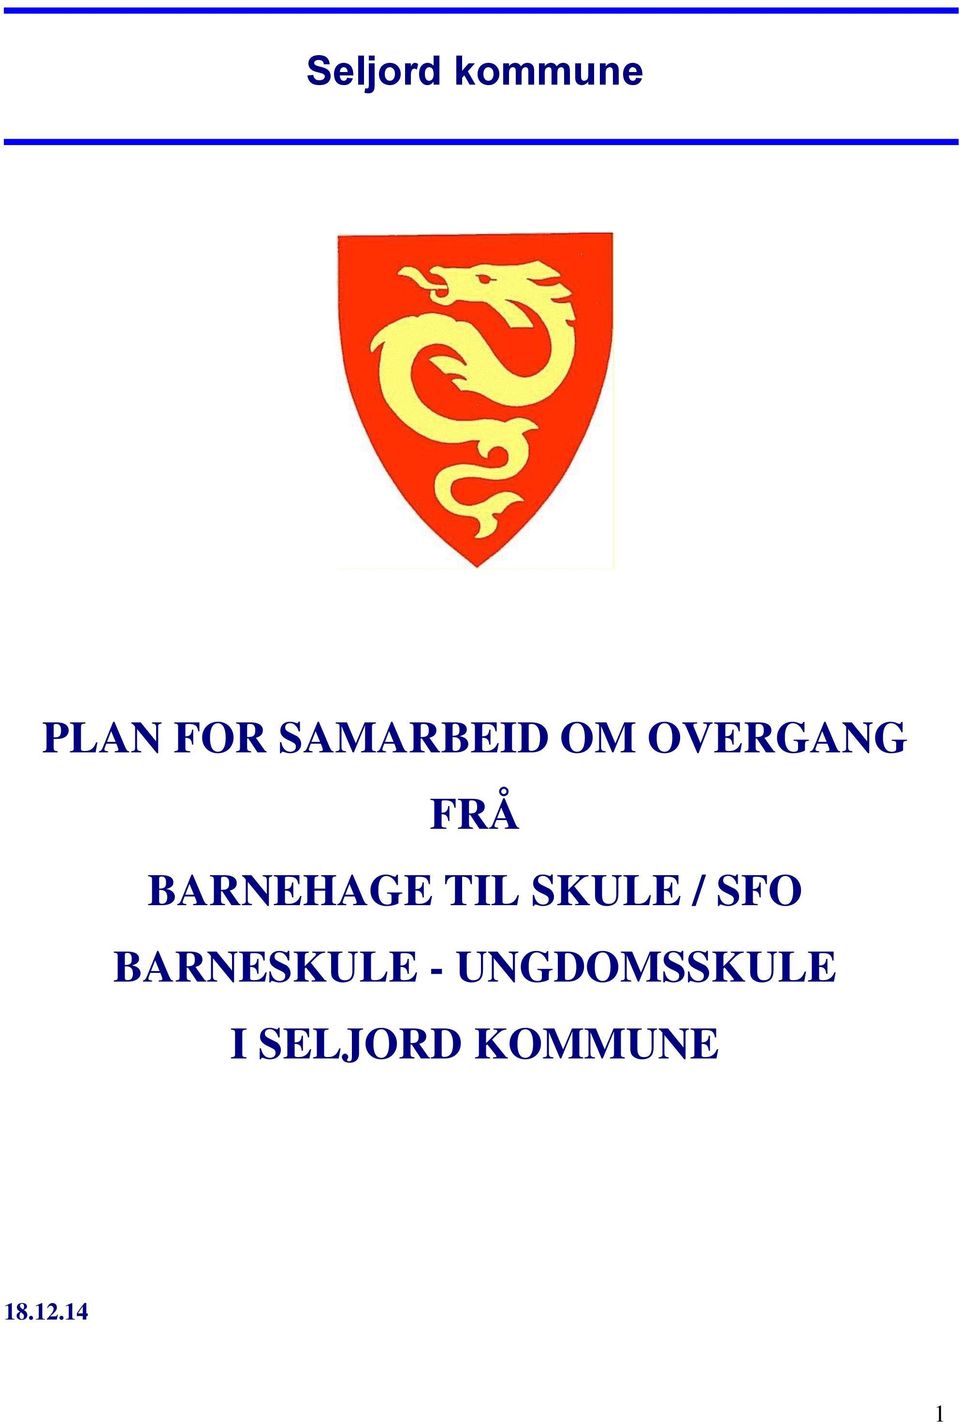 BARNEHAGE TIL SKULE / SFO